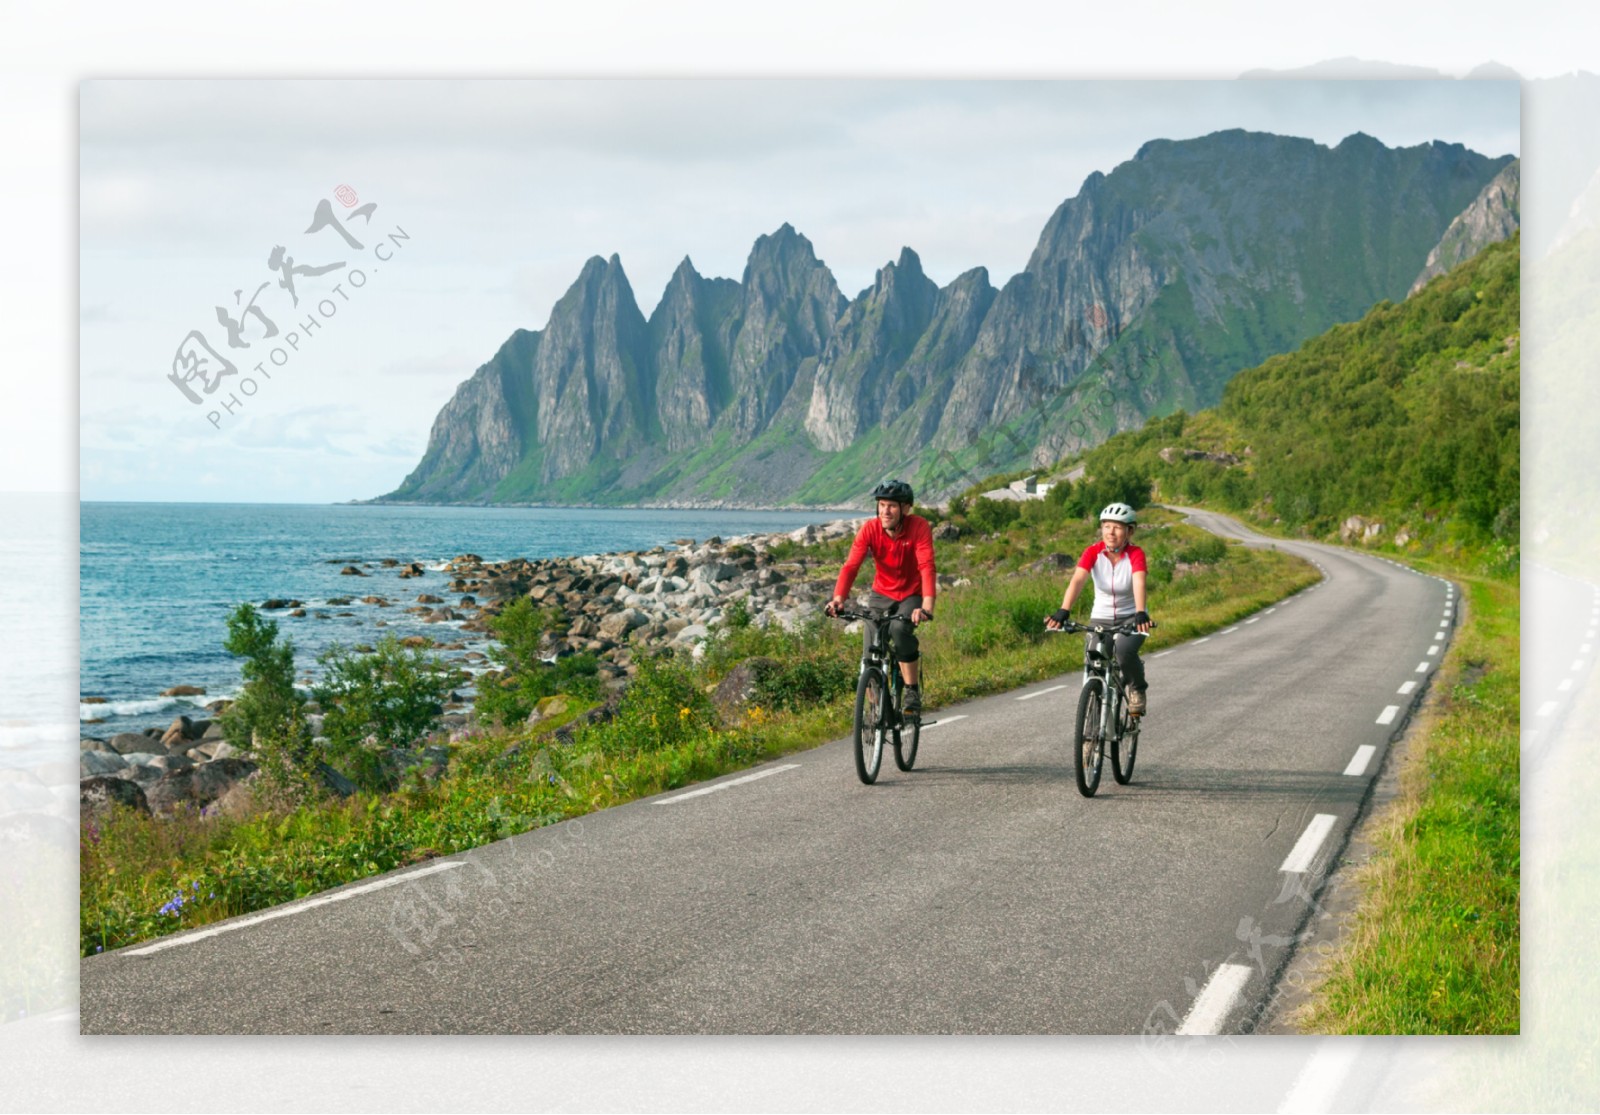 骑行运动与美丽海岸风景图片